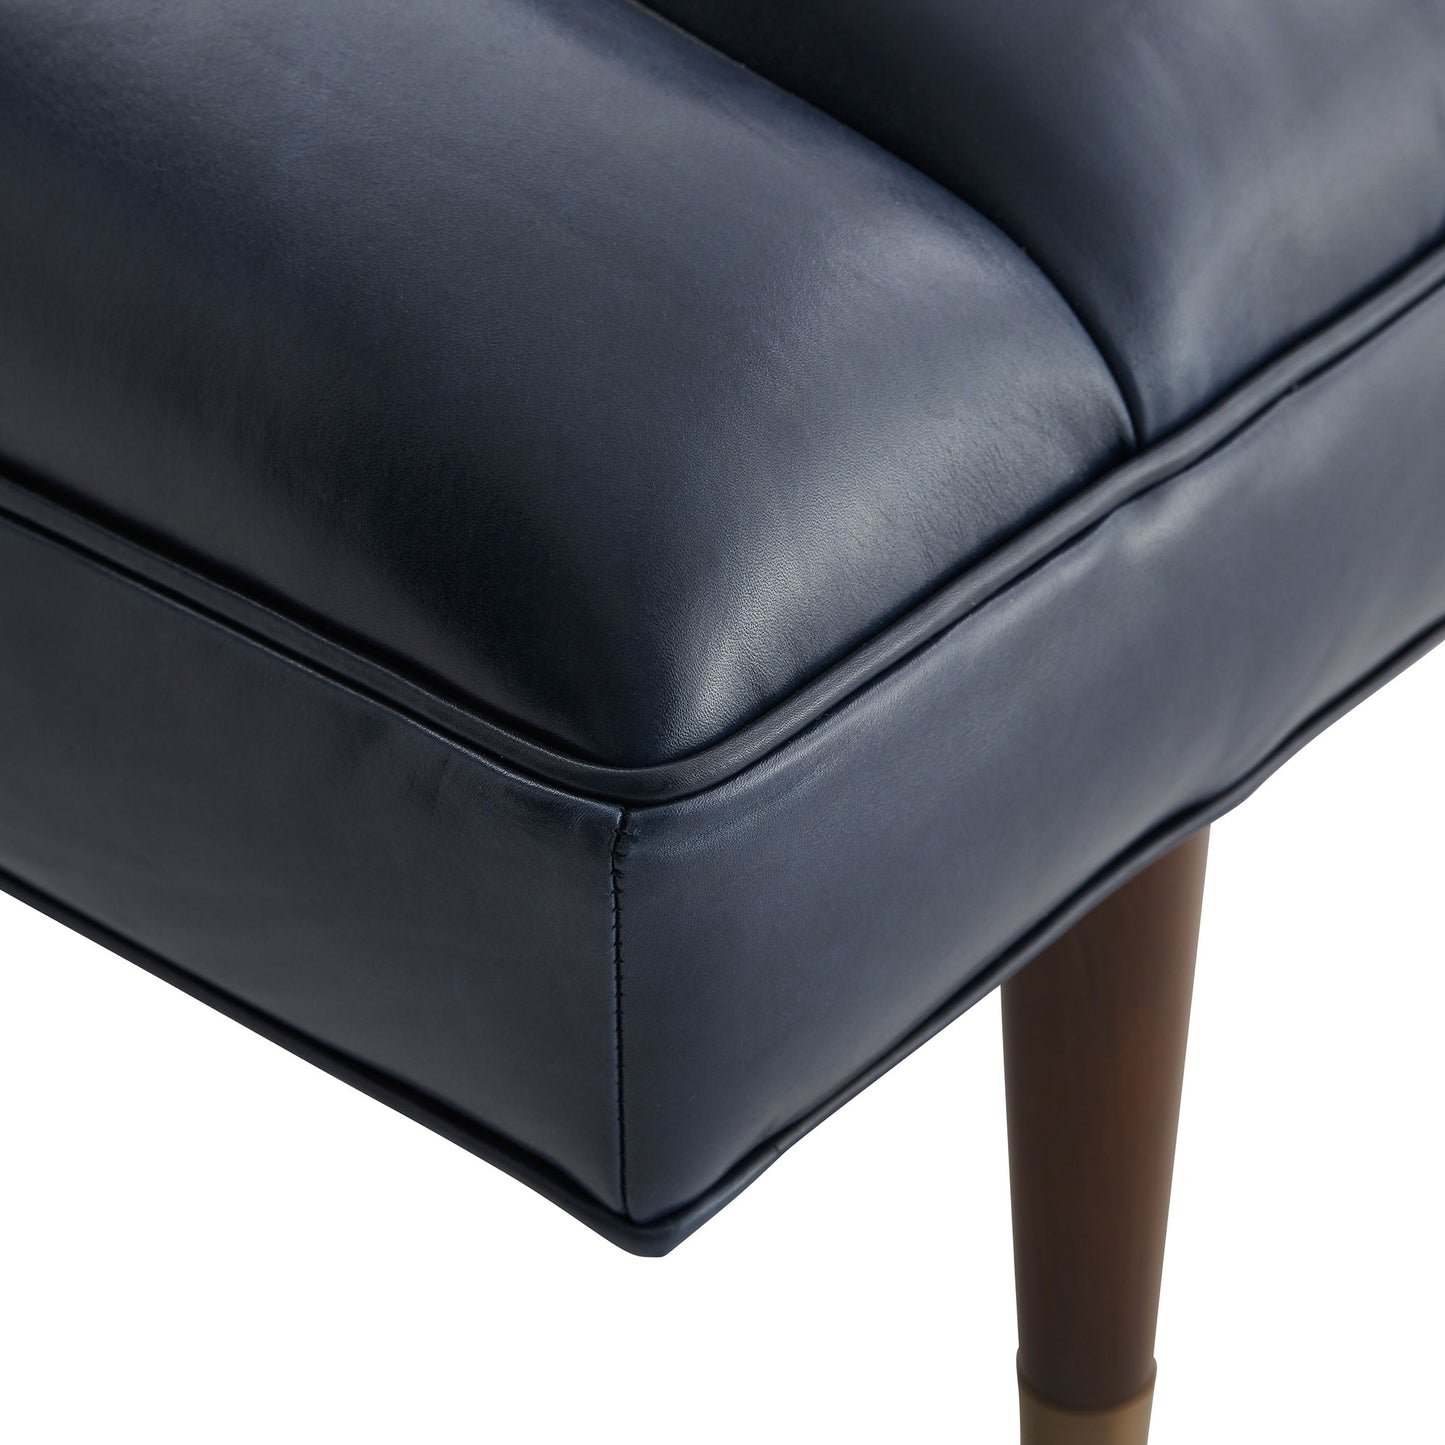 Indigo Leather Christophe Bench with Dark Walnut Finish - Stylish Seating Solution